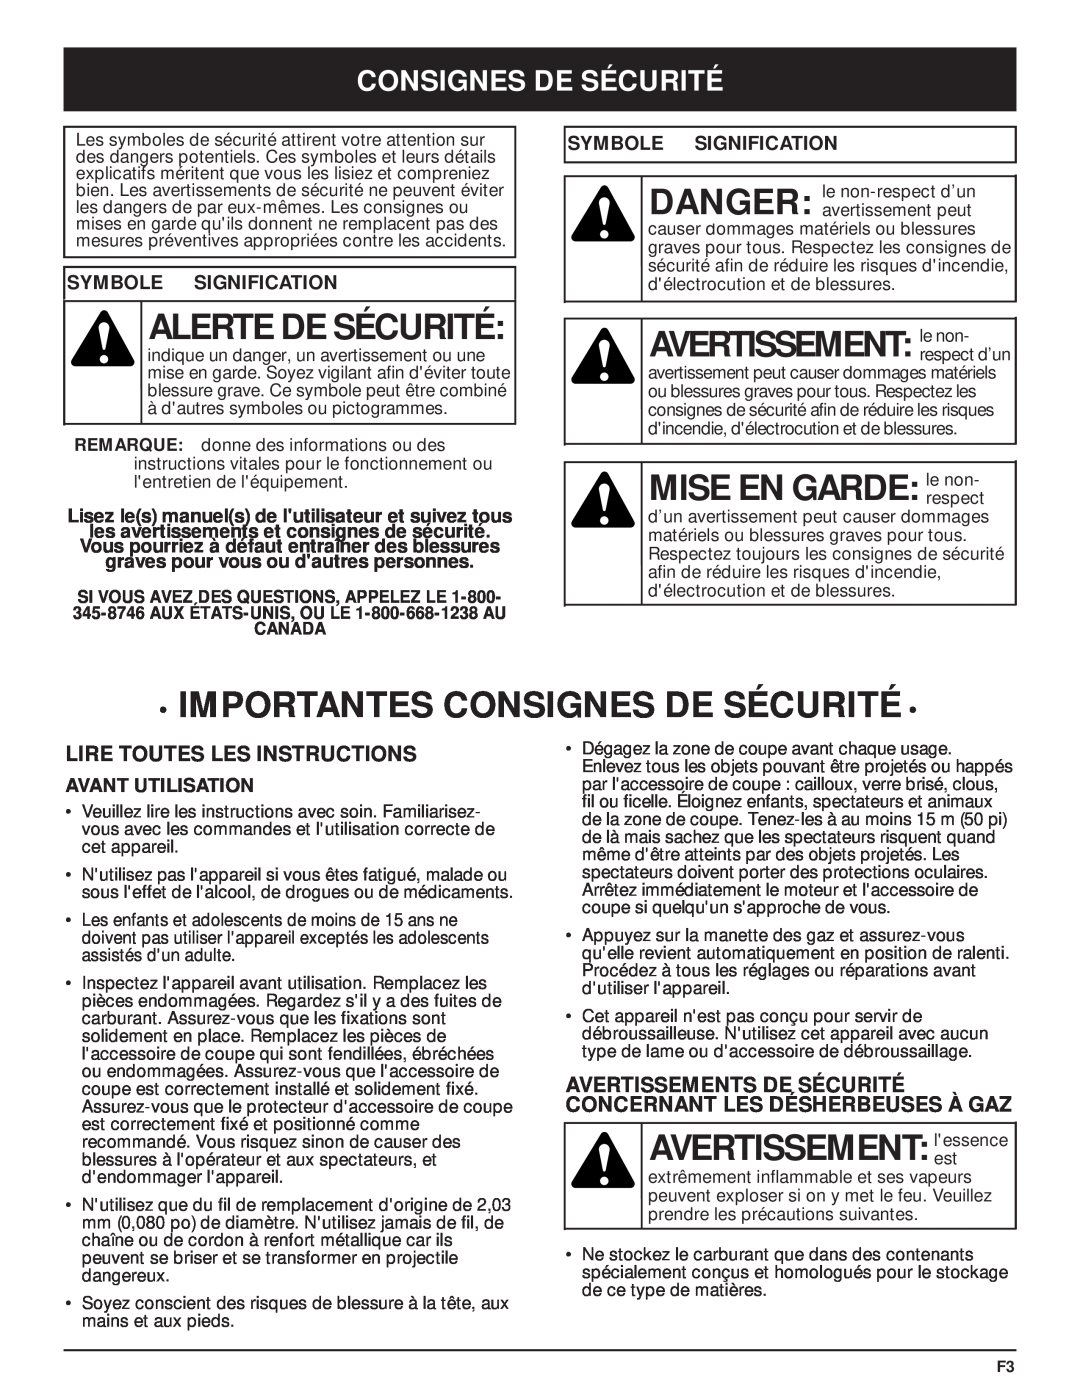 MTD MT700 manual Alerte De Sécurité, AVERTISSEMENT le non, MISE EN GARDE le non, Importantes Consignes De Sécurité 